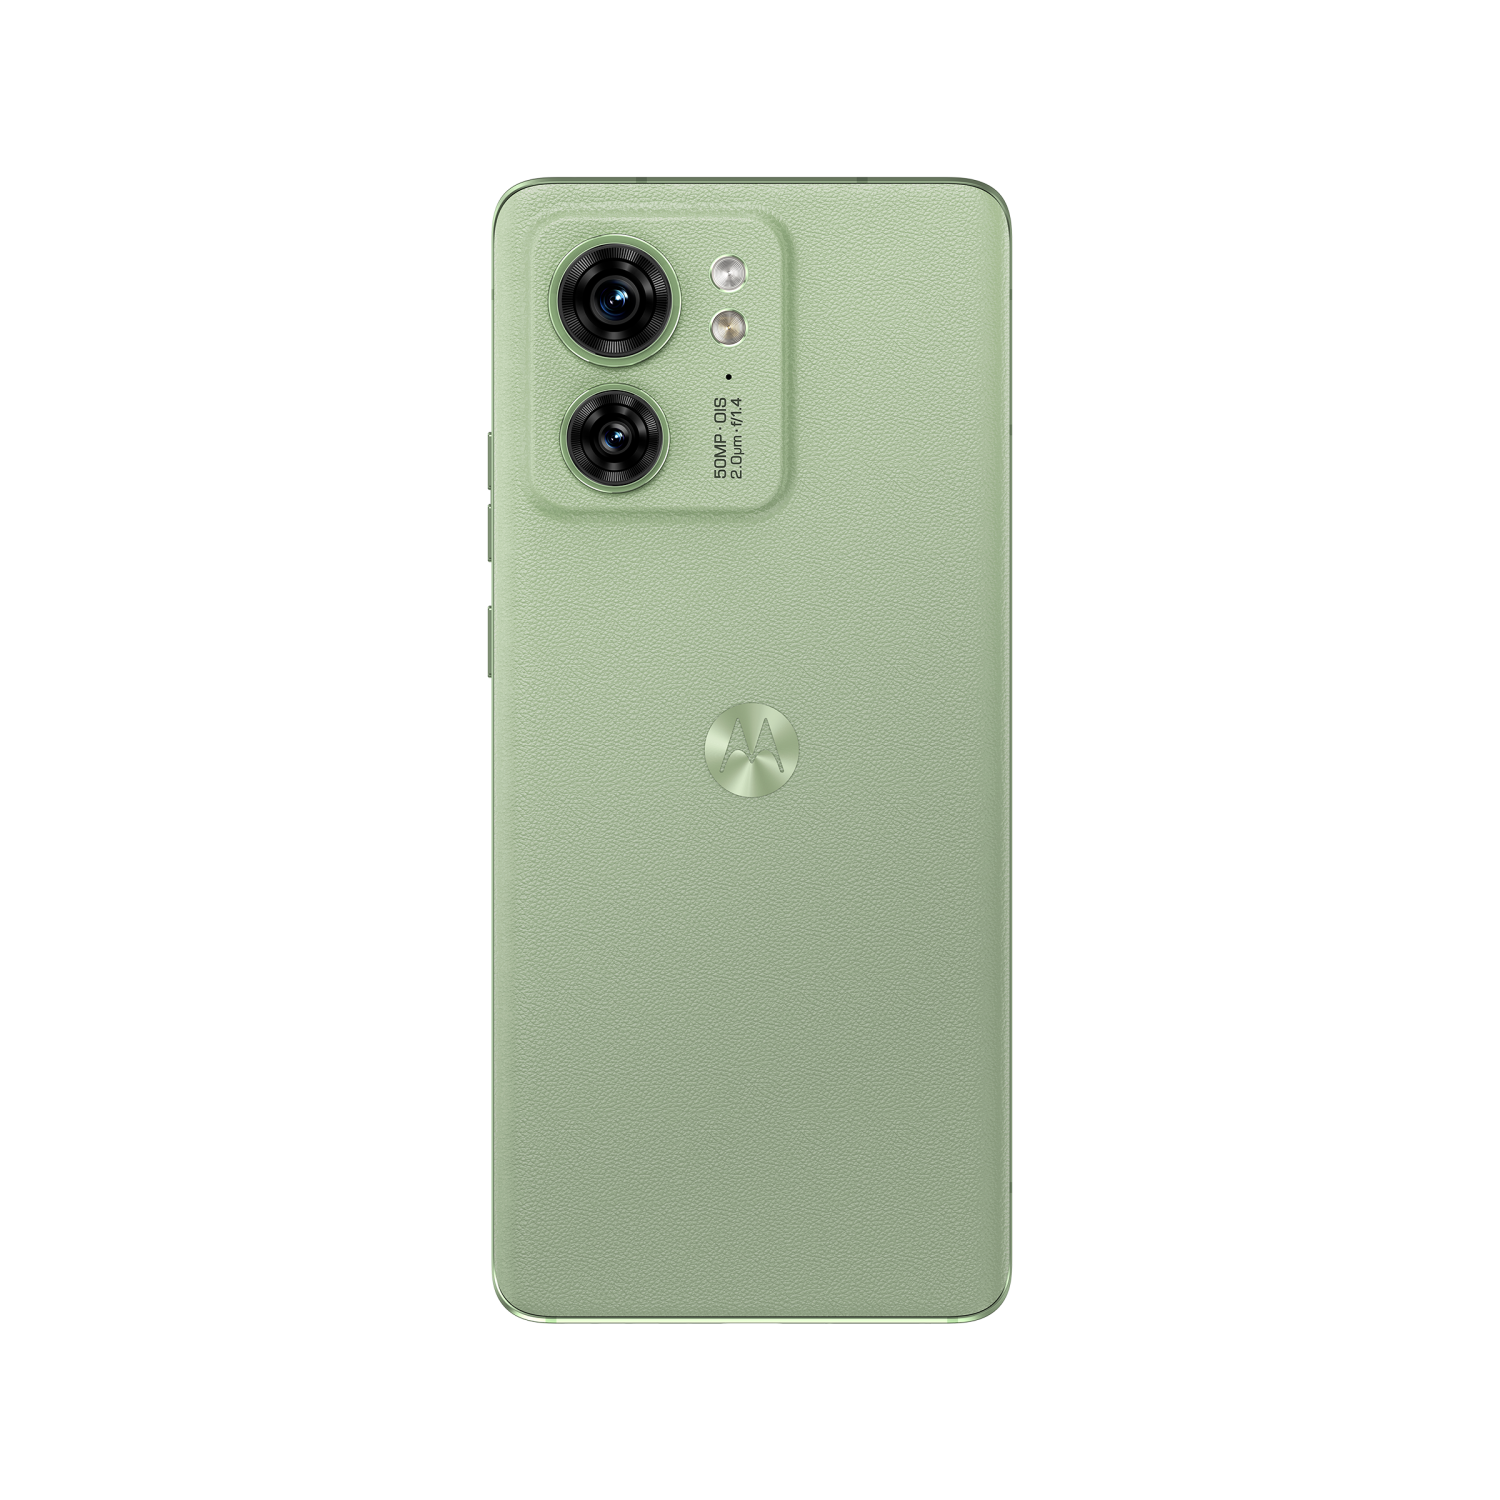 Motorola EDGE 40 8GB/256GB Nebula Green